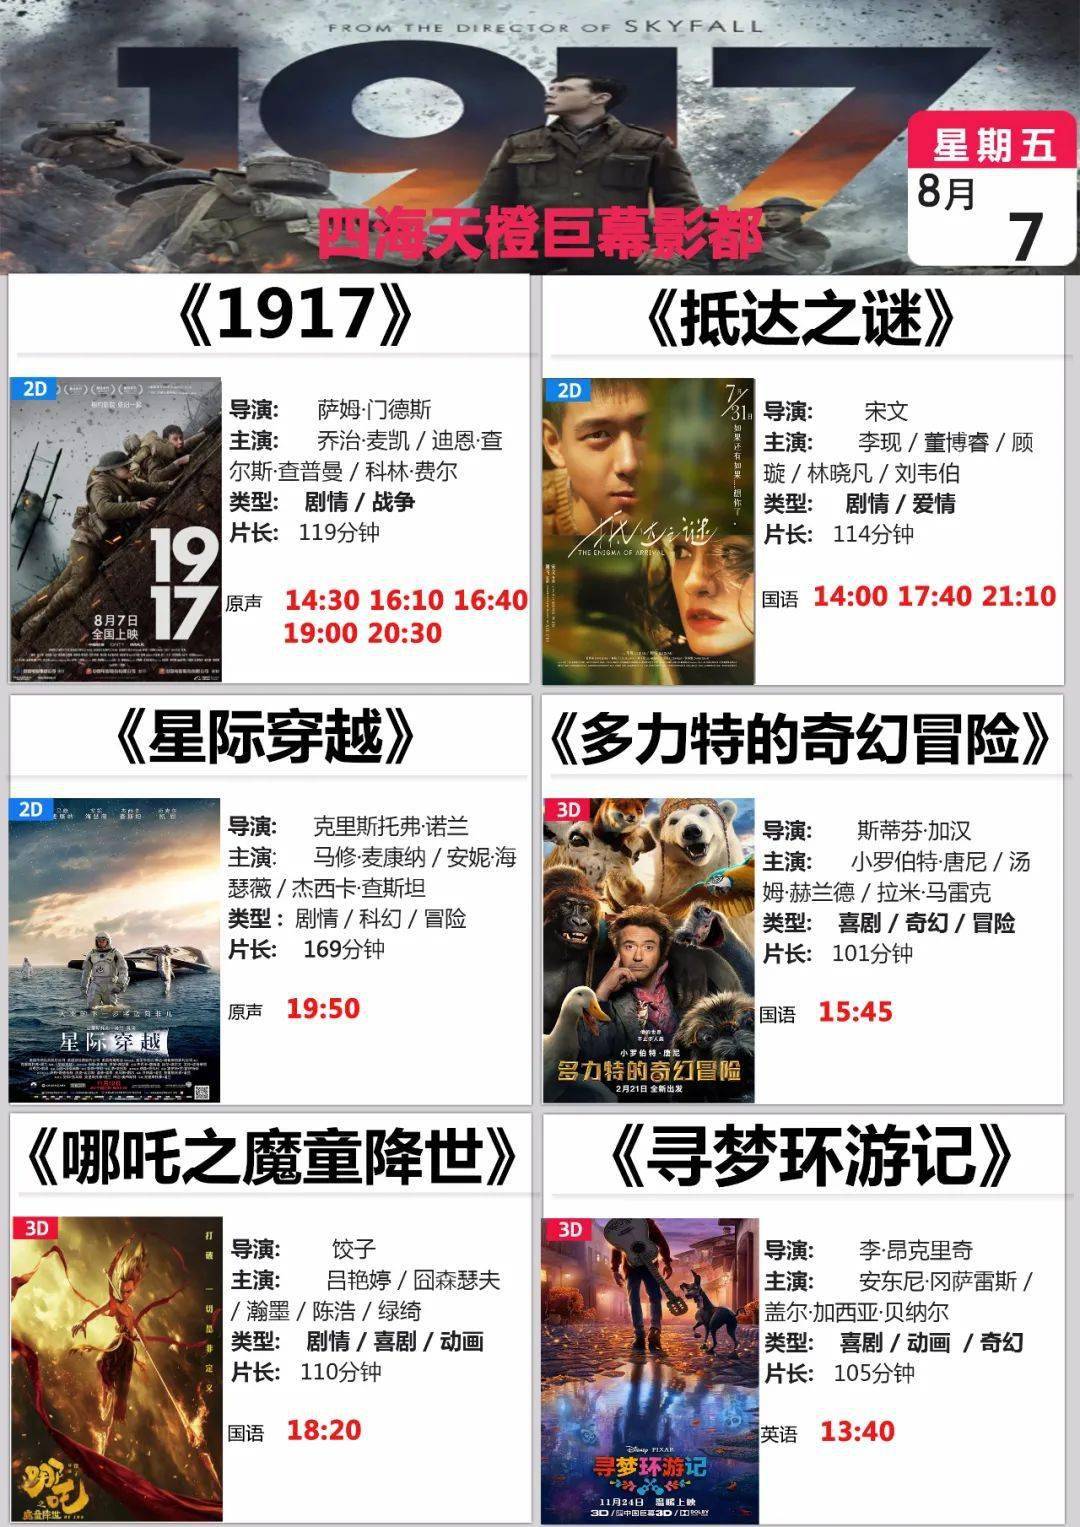 华彩影城 & 四海天橙 8月7日(周五)电影排片表!